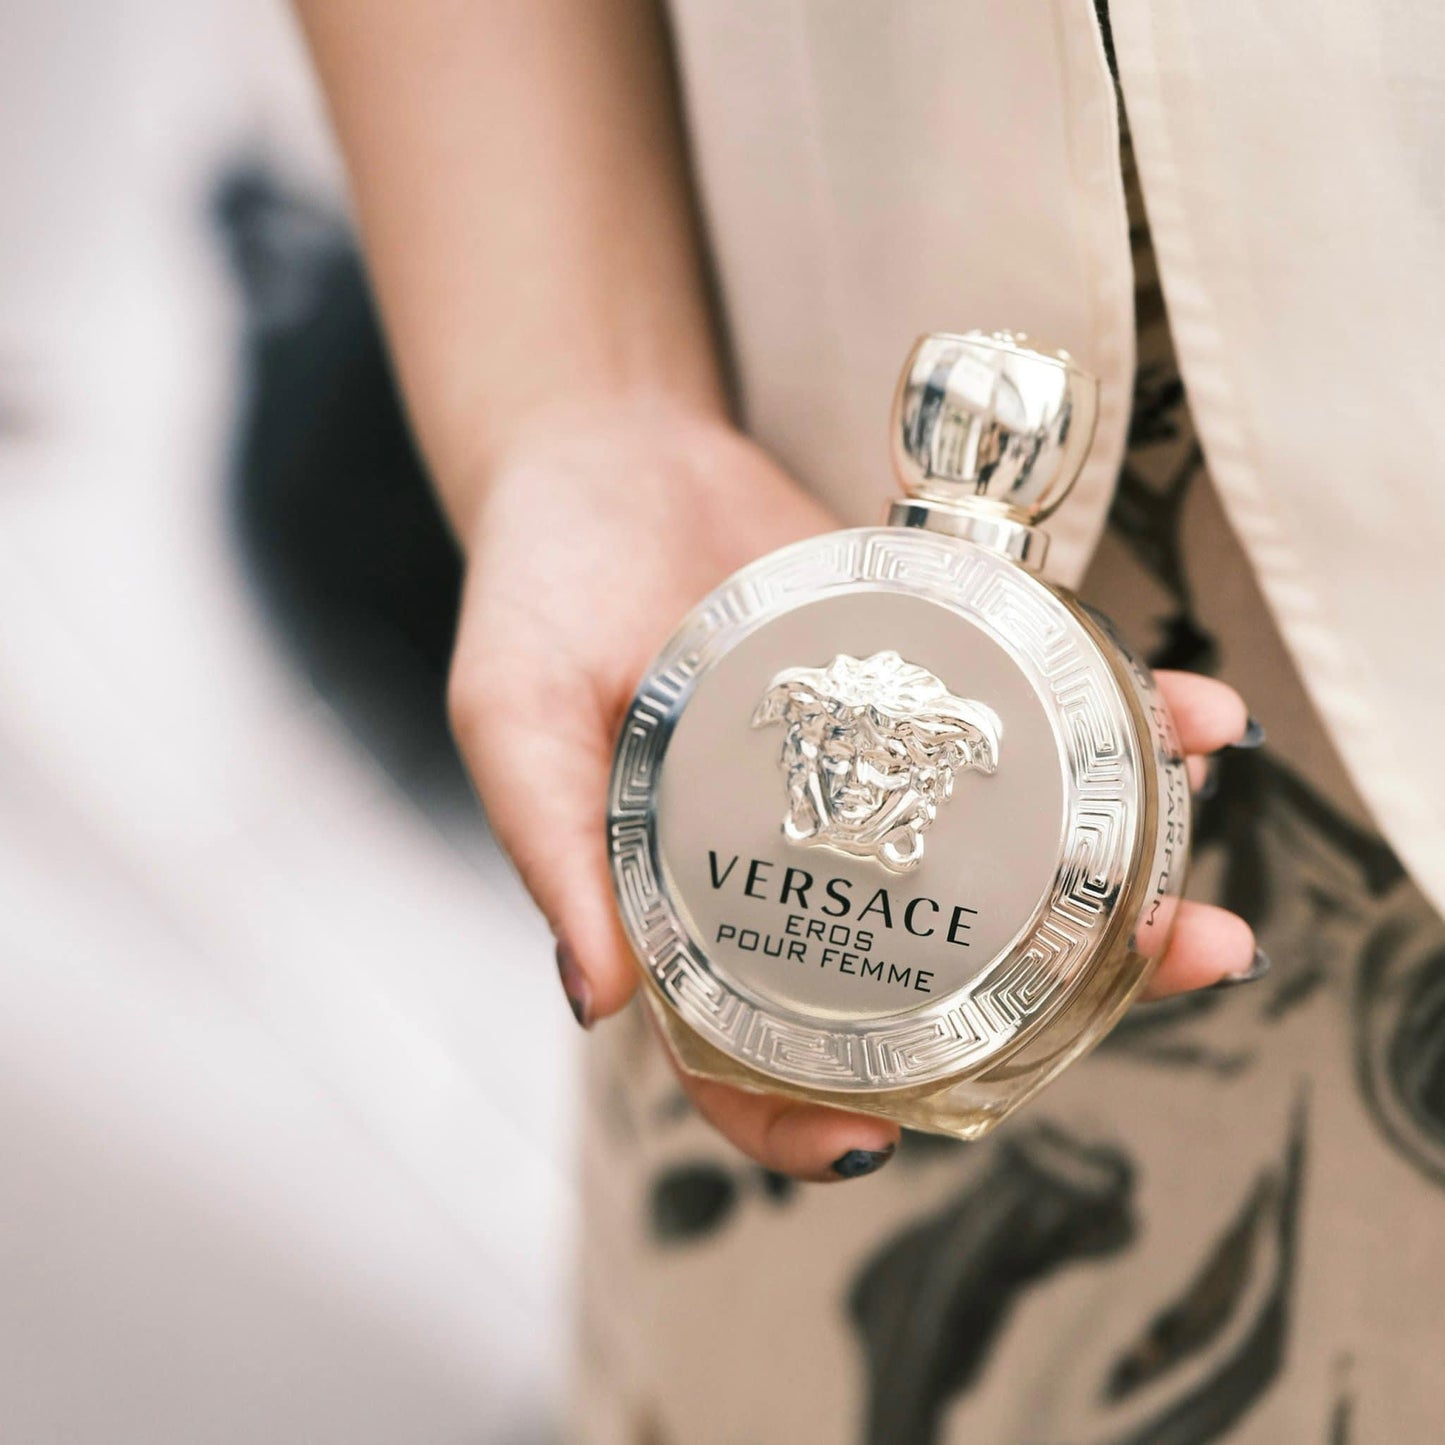 Versace Eros Pour Femme Eau De Parfum 100ml for Her